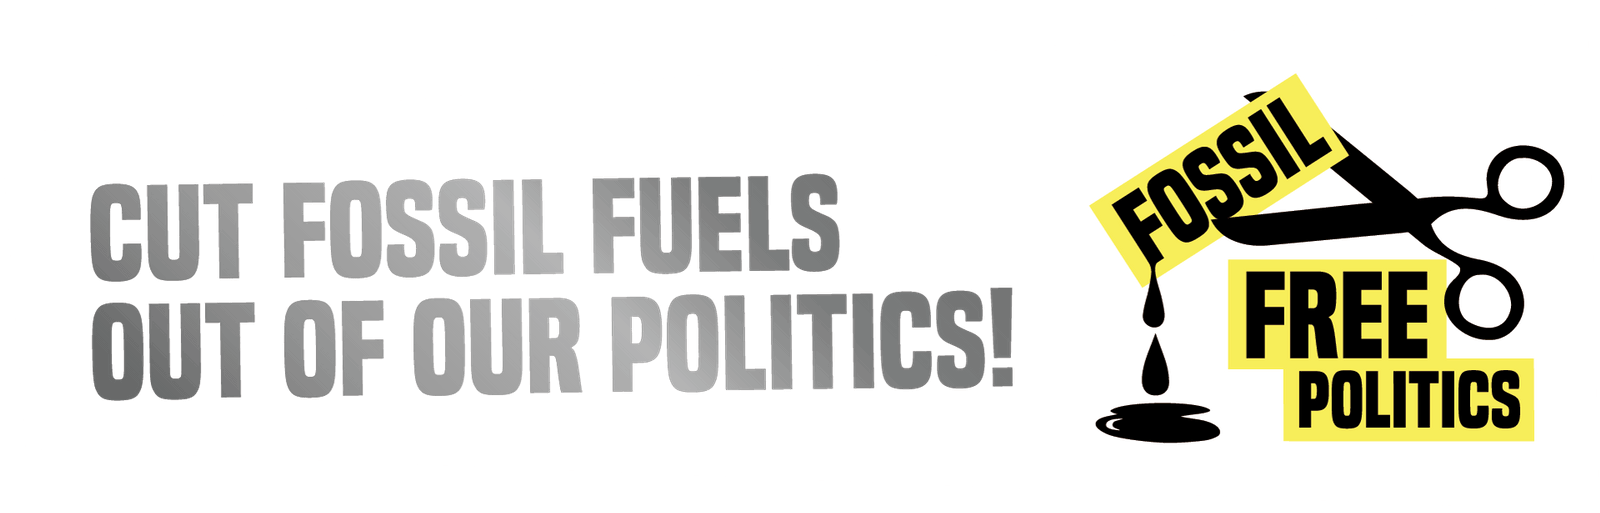 Free Fossil Politics